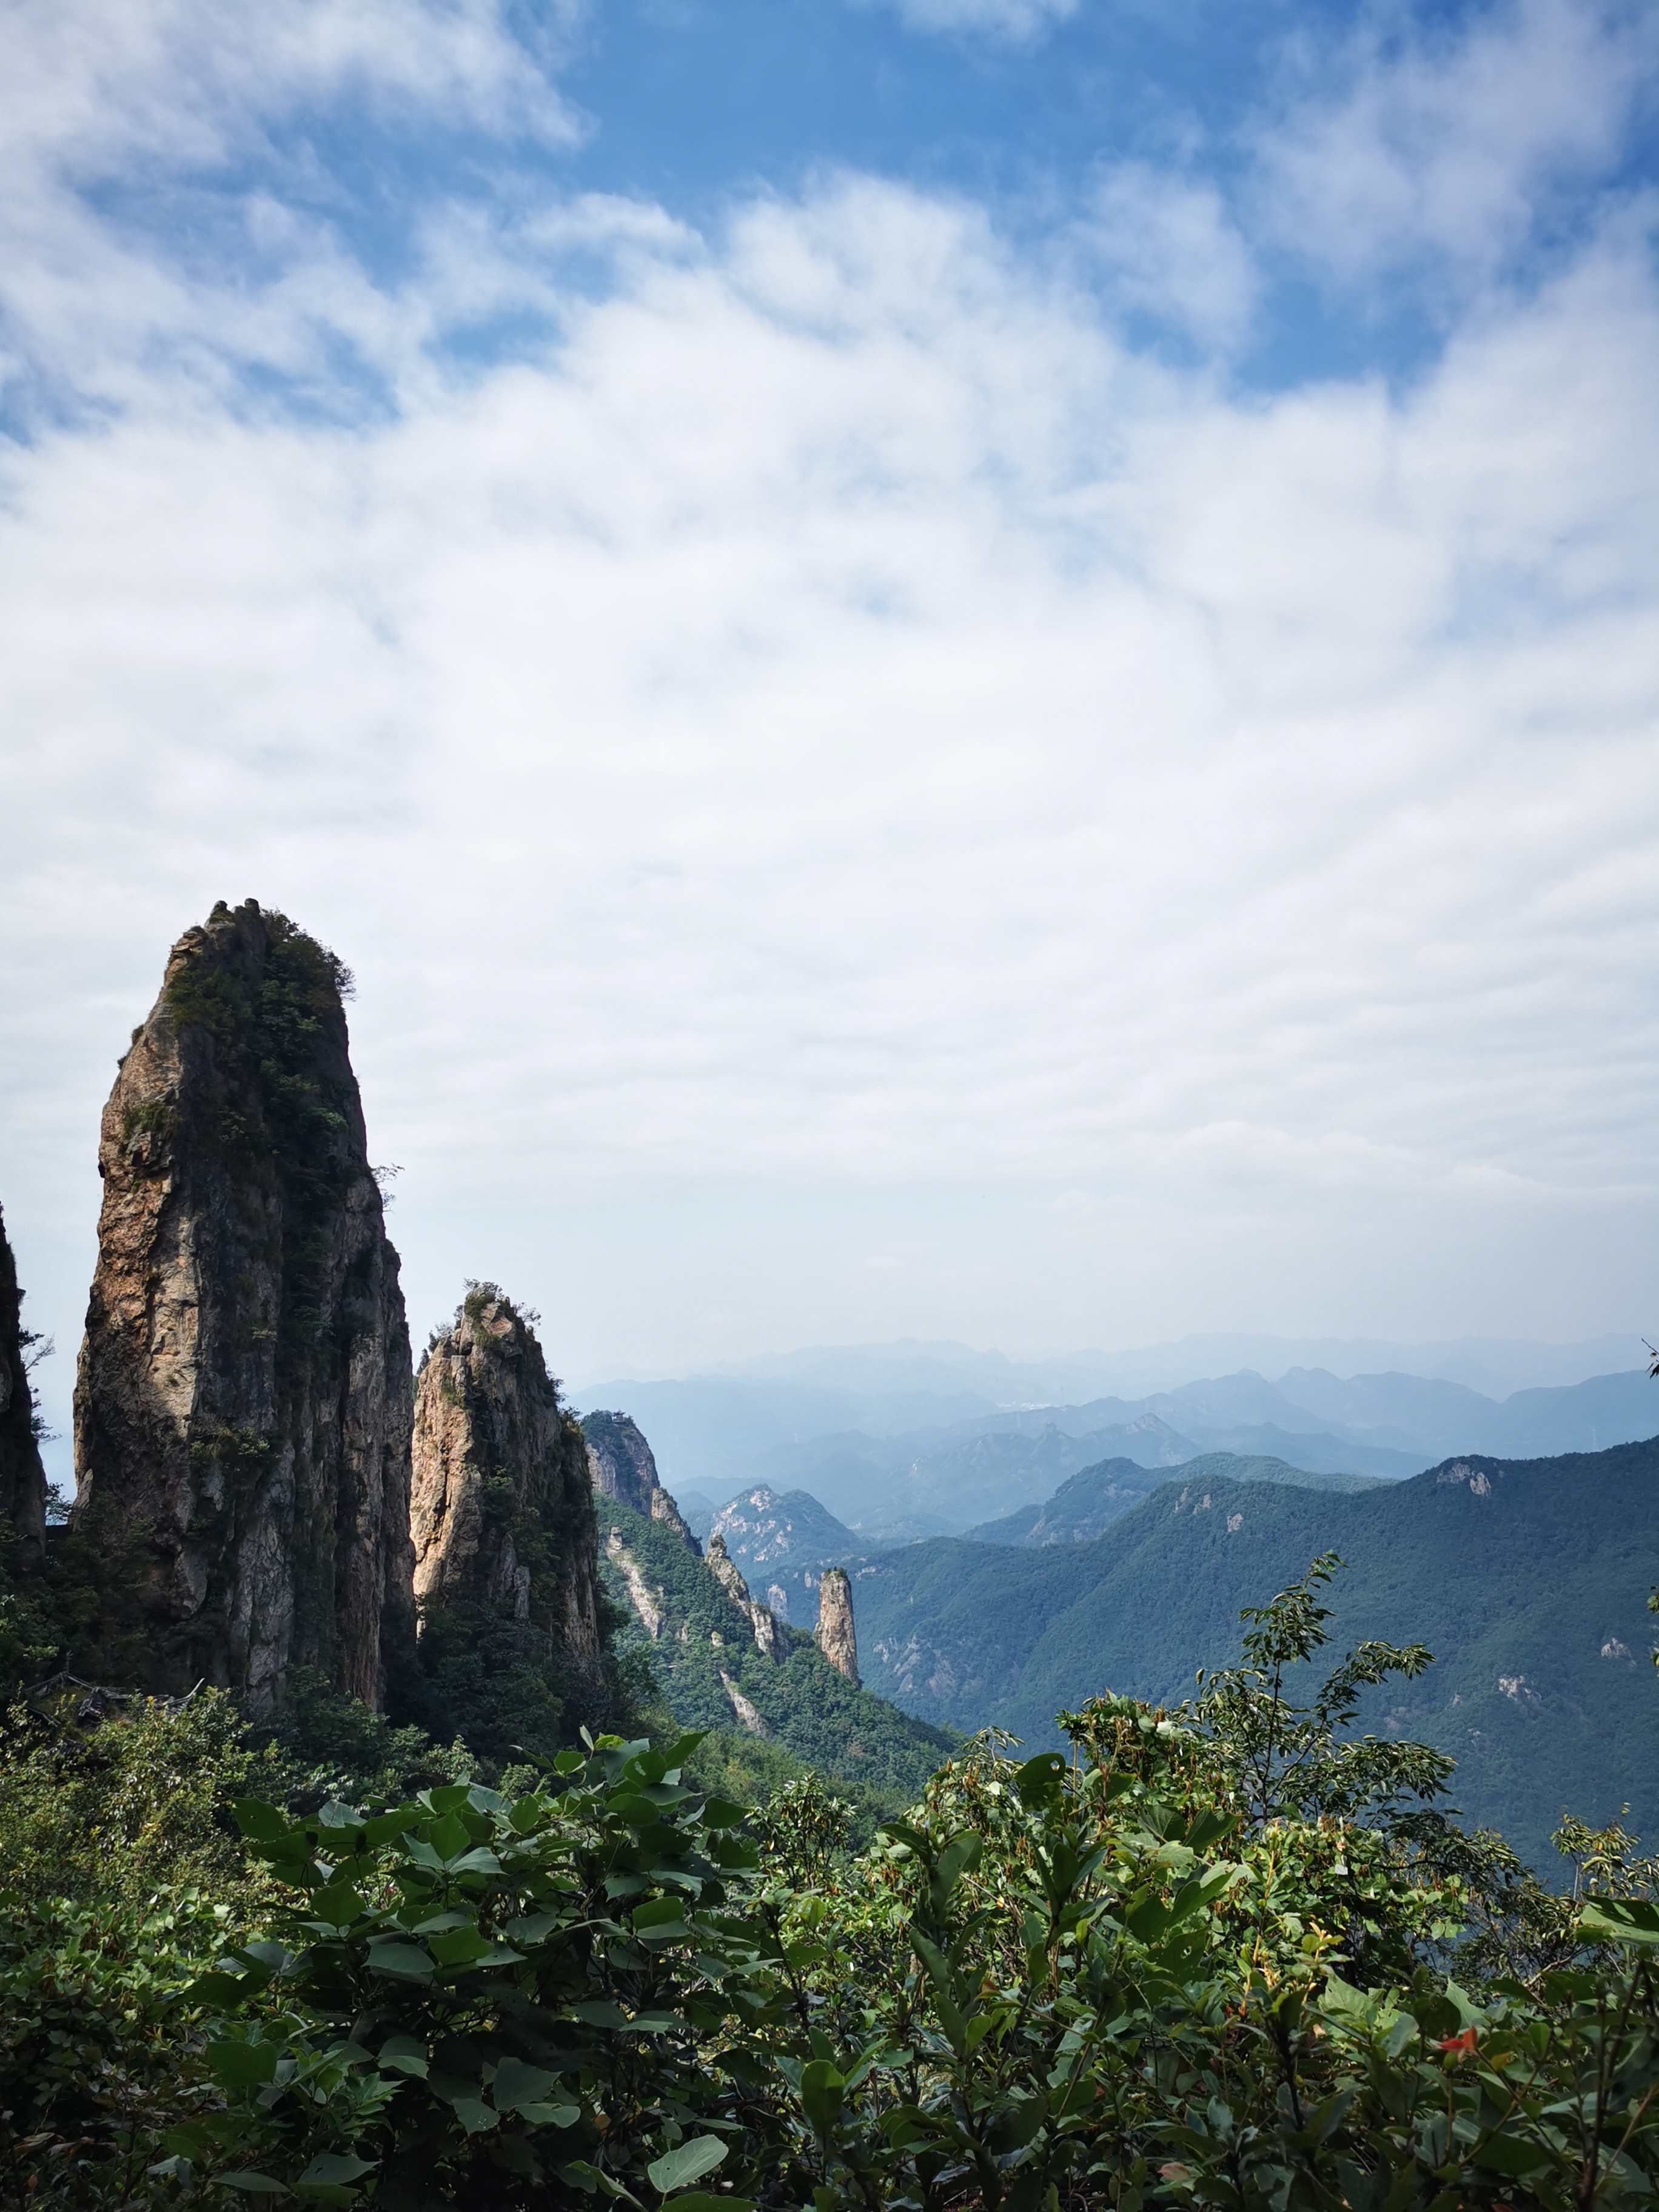 爬仙华山风景名胜区-总体来说还是比较轻松的，可以来山上看看风景，吸吸氧